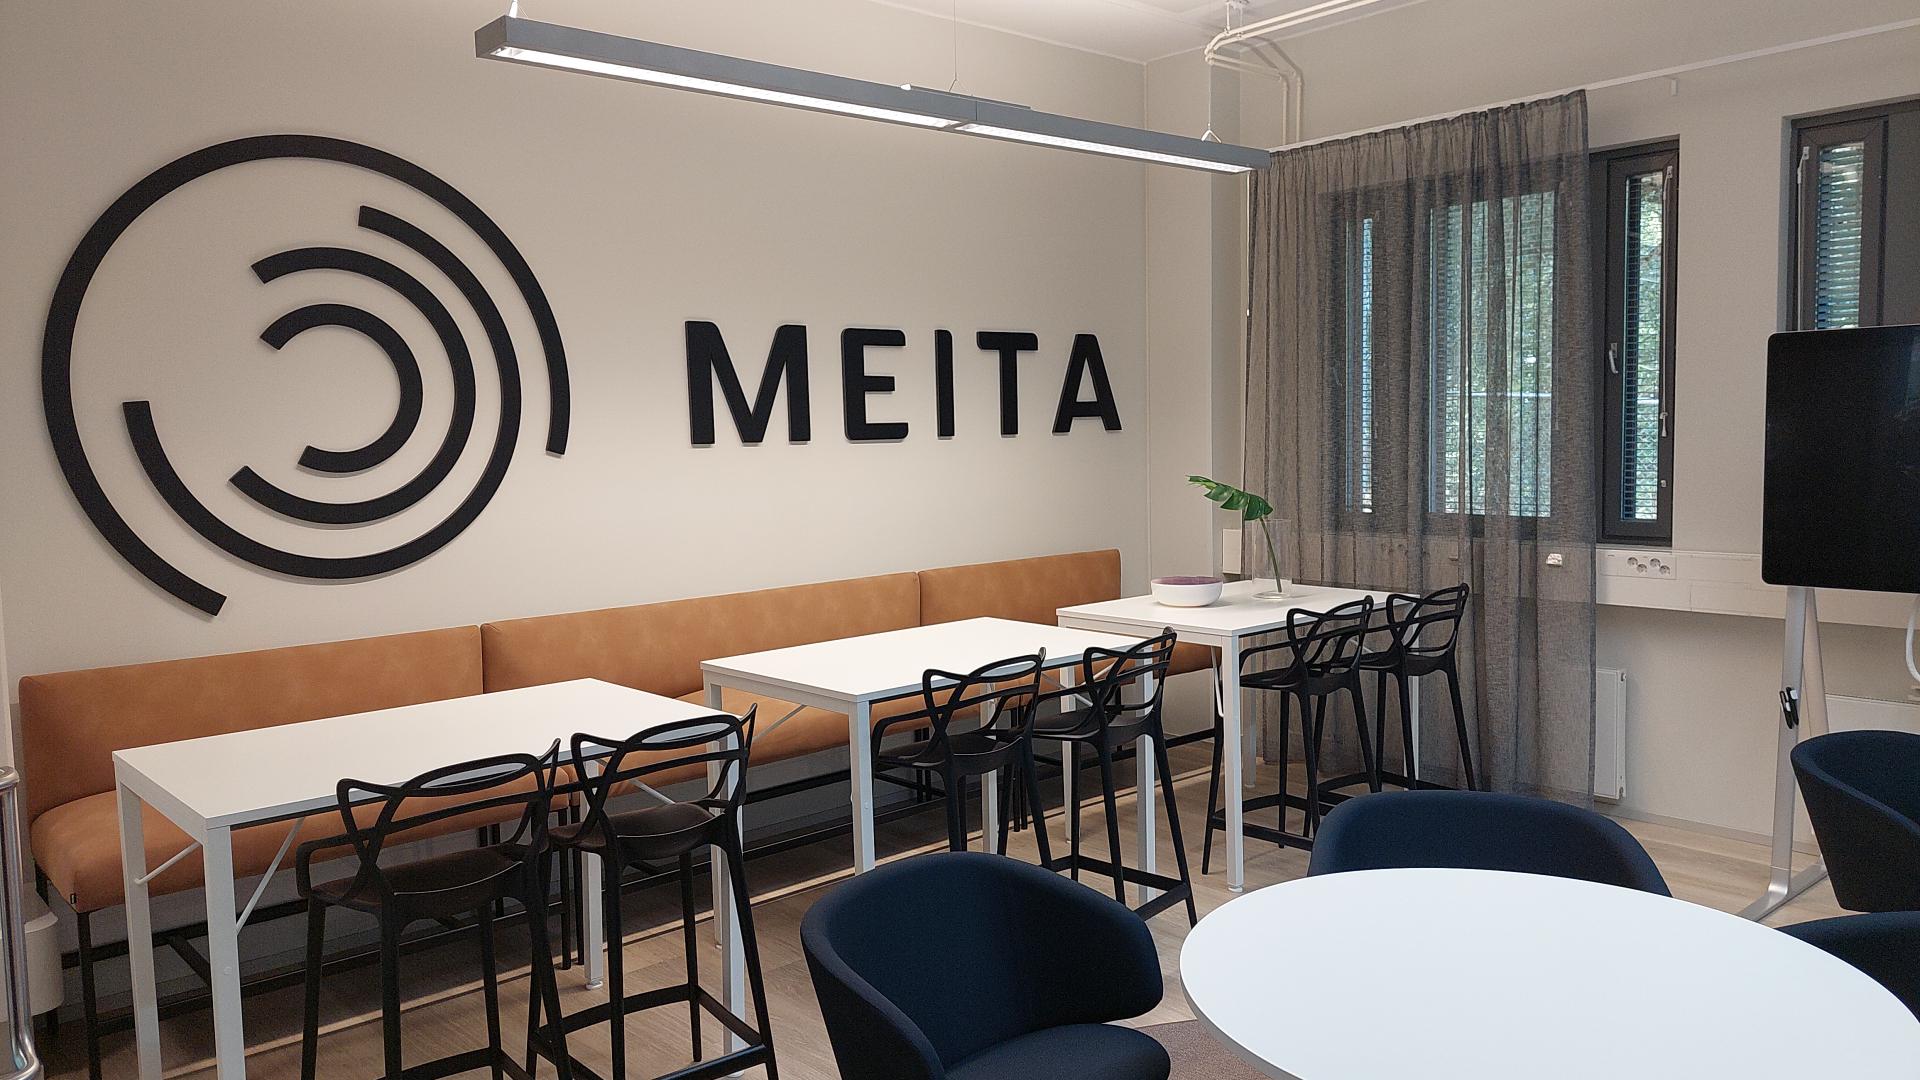 Tässä kuvassa on Meitan logo ja teksti Lappeenrannan toimiston kahvion seinällä sekä pöytiä ja tuoleja